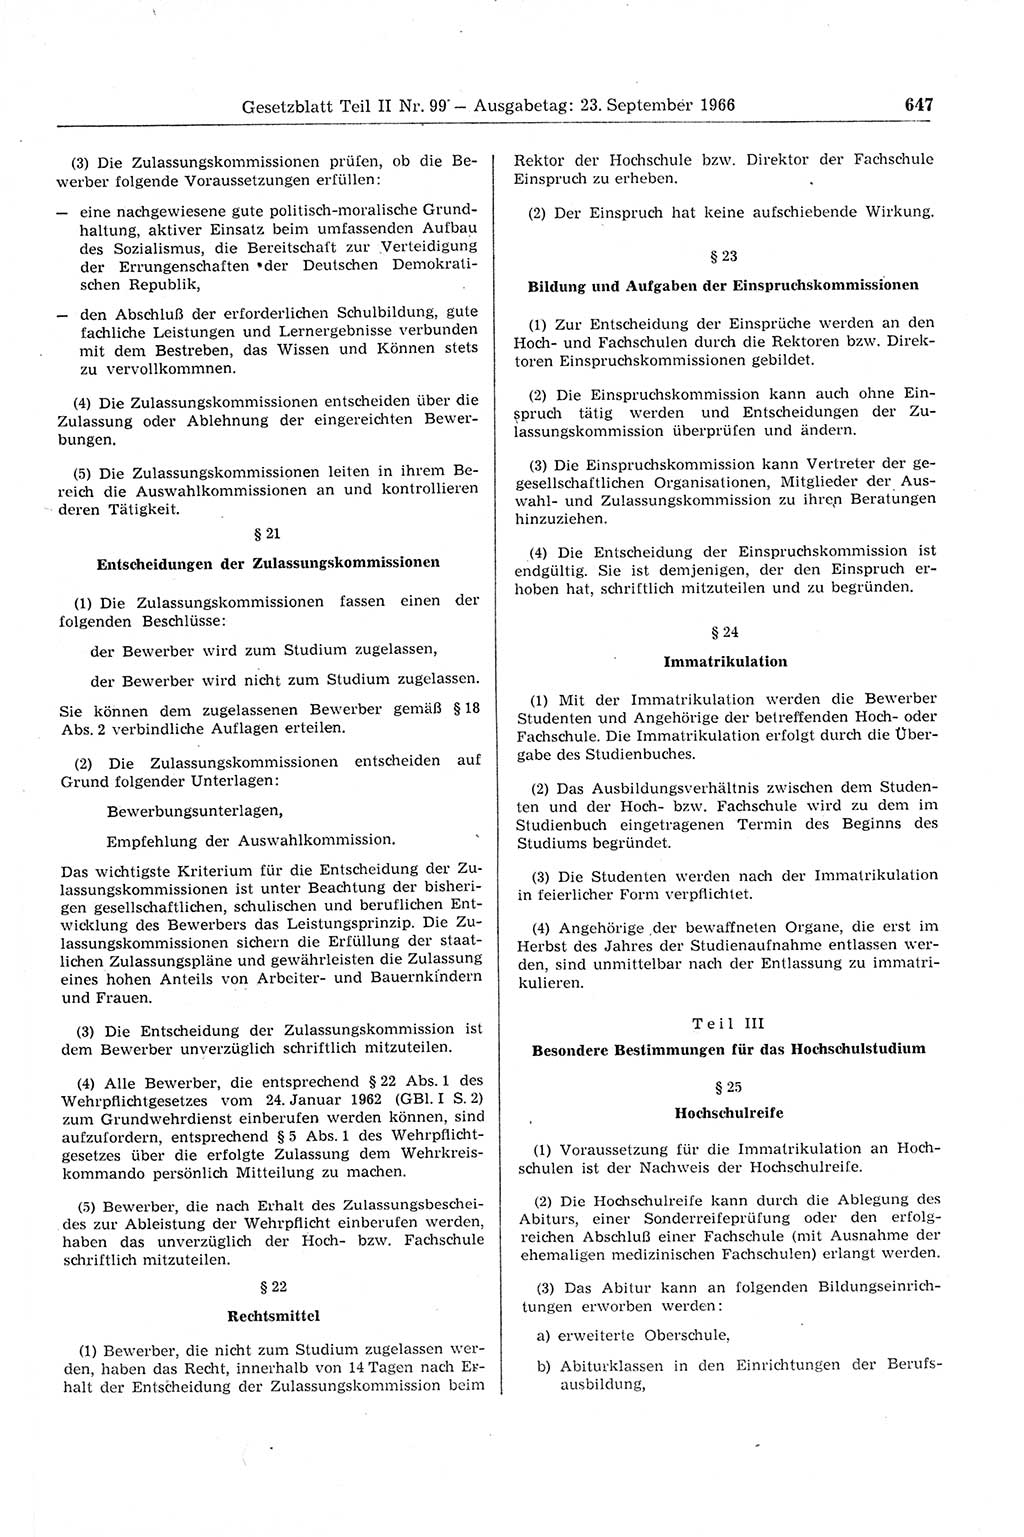 Gesetzblatt (GBl.) der Deutschen Demokratischen Republik (DDR) Teil ⅠⅠ 1966, Seite 647 (GBl. DDR ⅠⅠ 1966, S. 647)